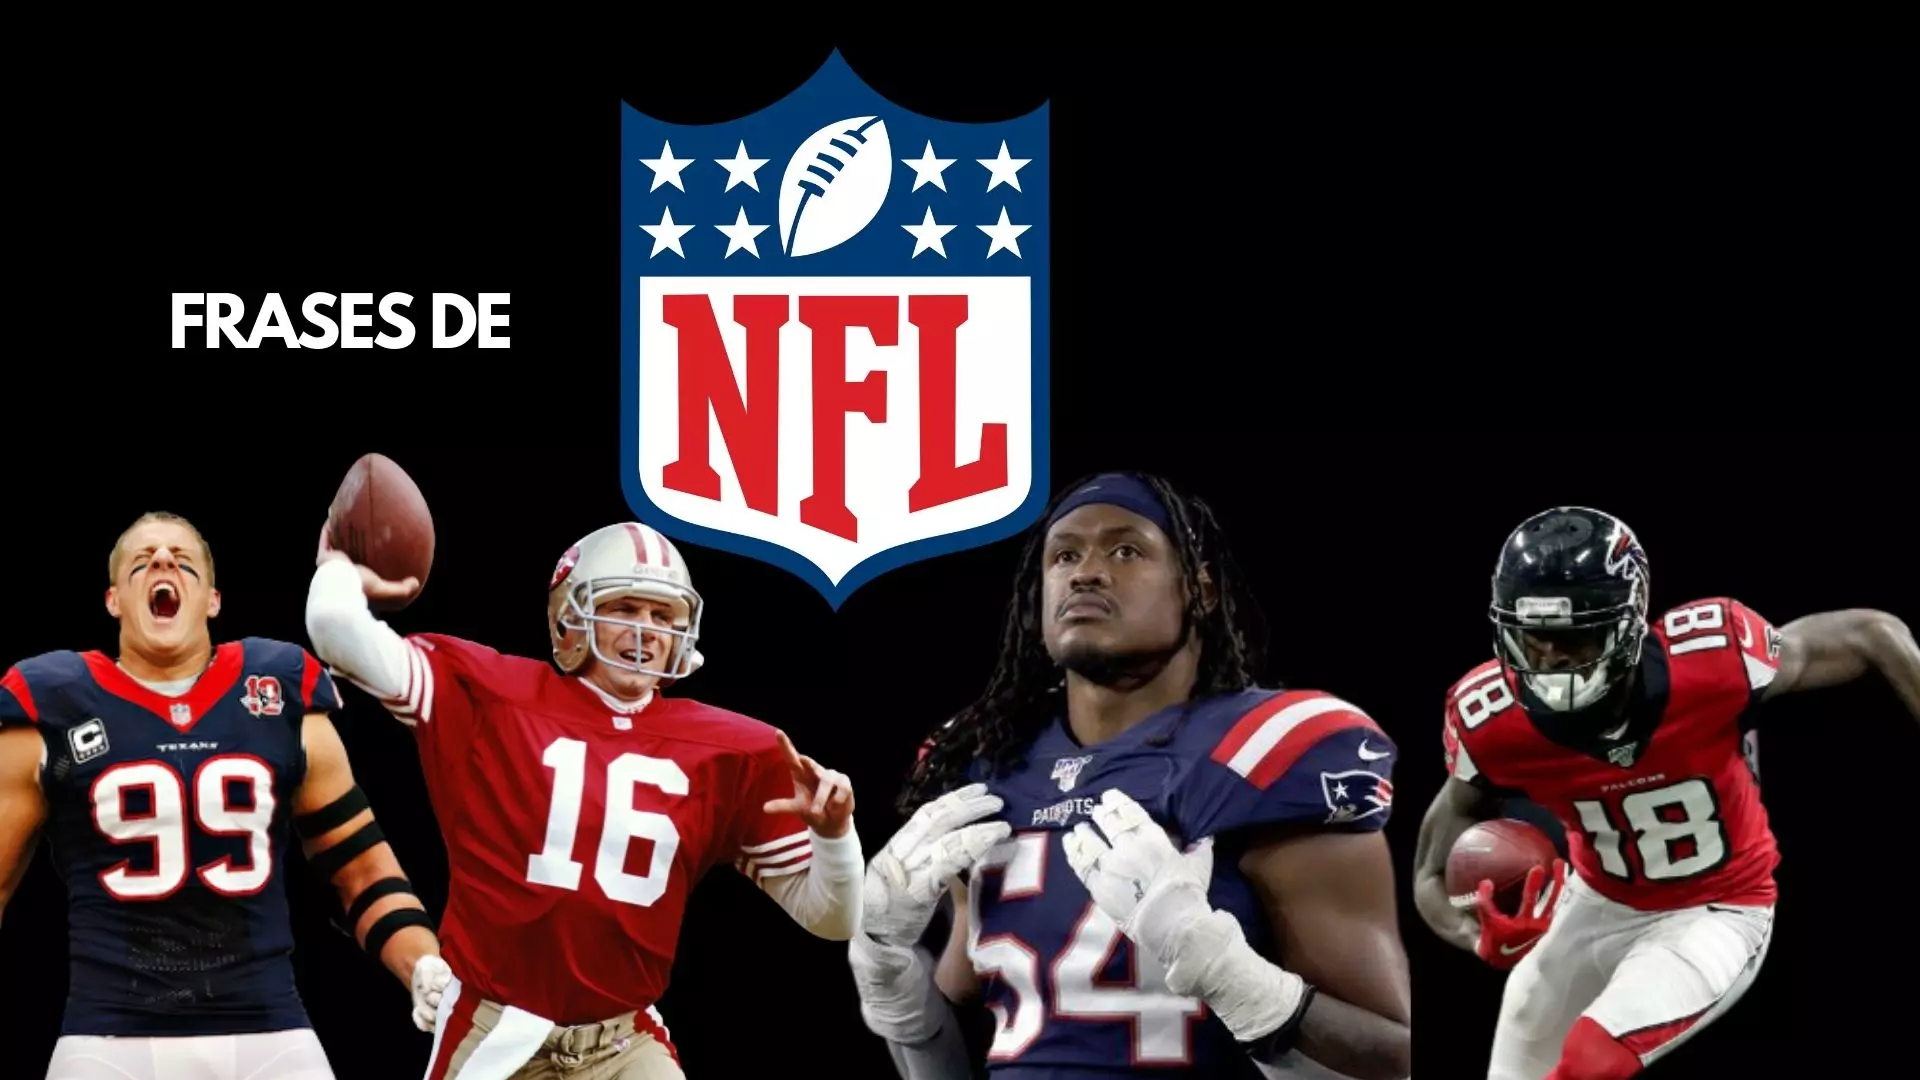 201-Frases-motivacionales del football americano y de jugadores de la NFL